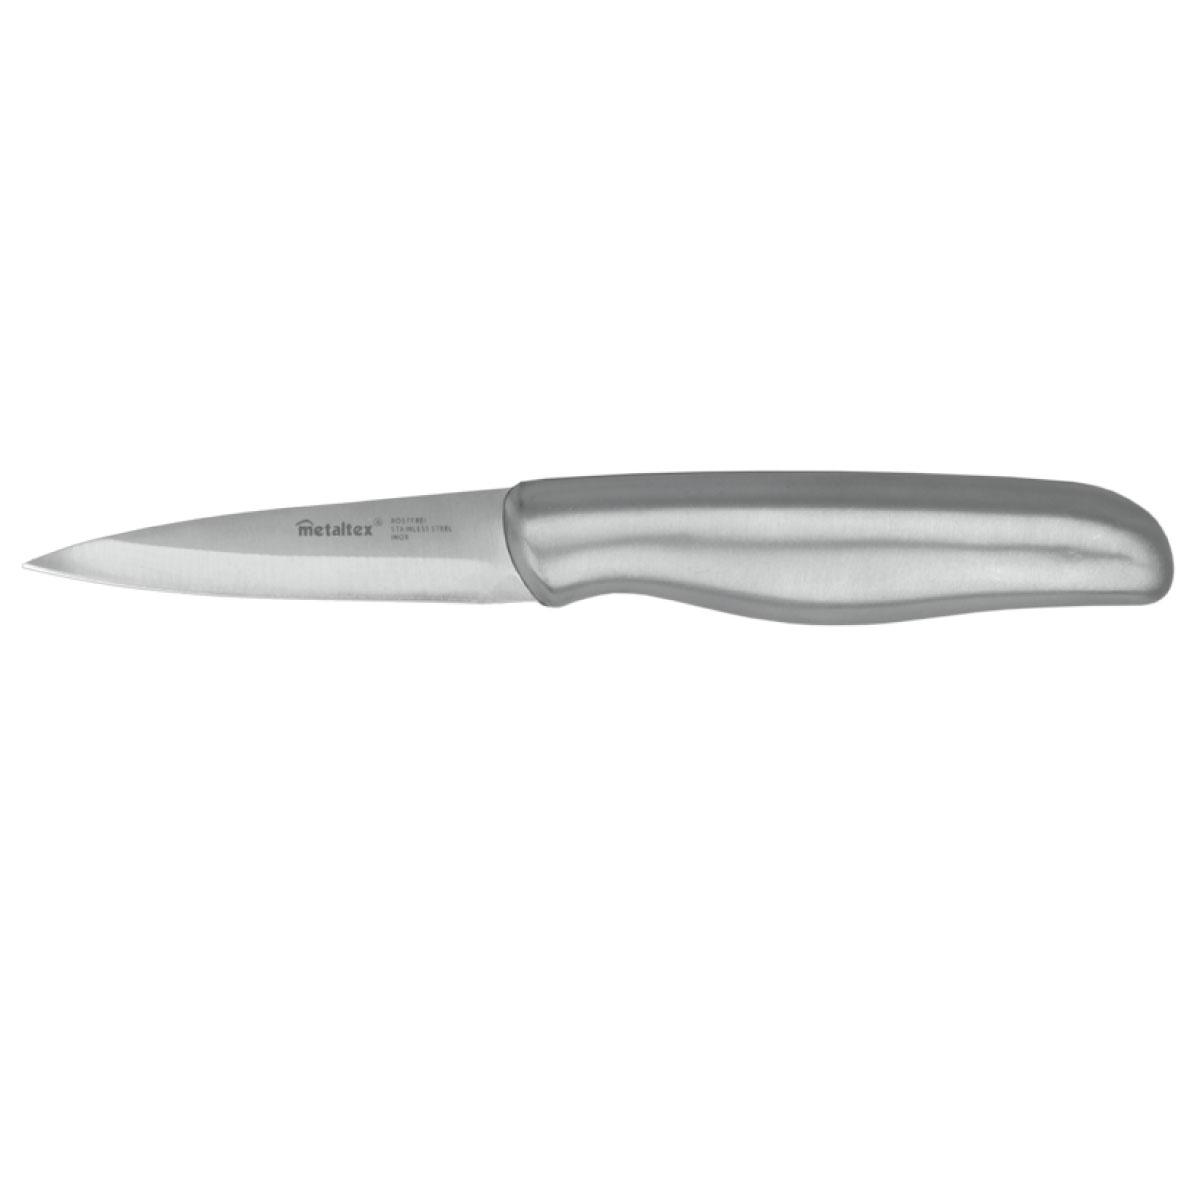 سكين مطبخ للتقشير ستانلس ستيل 6 بوصة ميتالتكس  Metaltex Steel Paring Knife Gourmet 6" Silver Steel